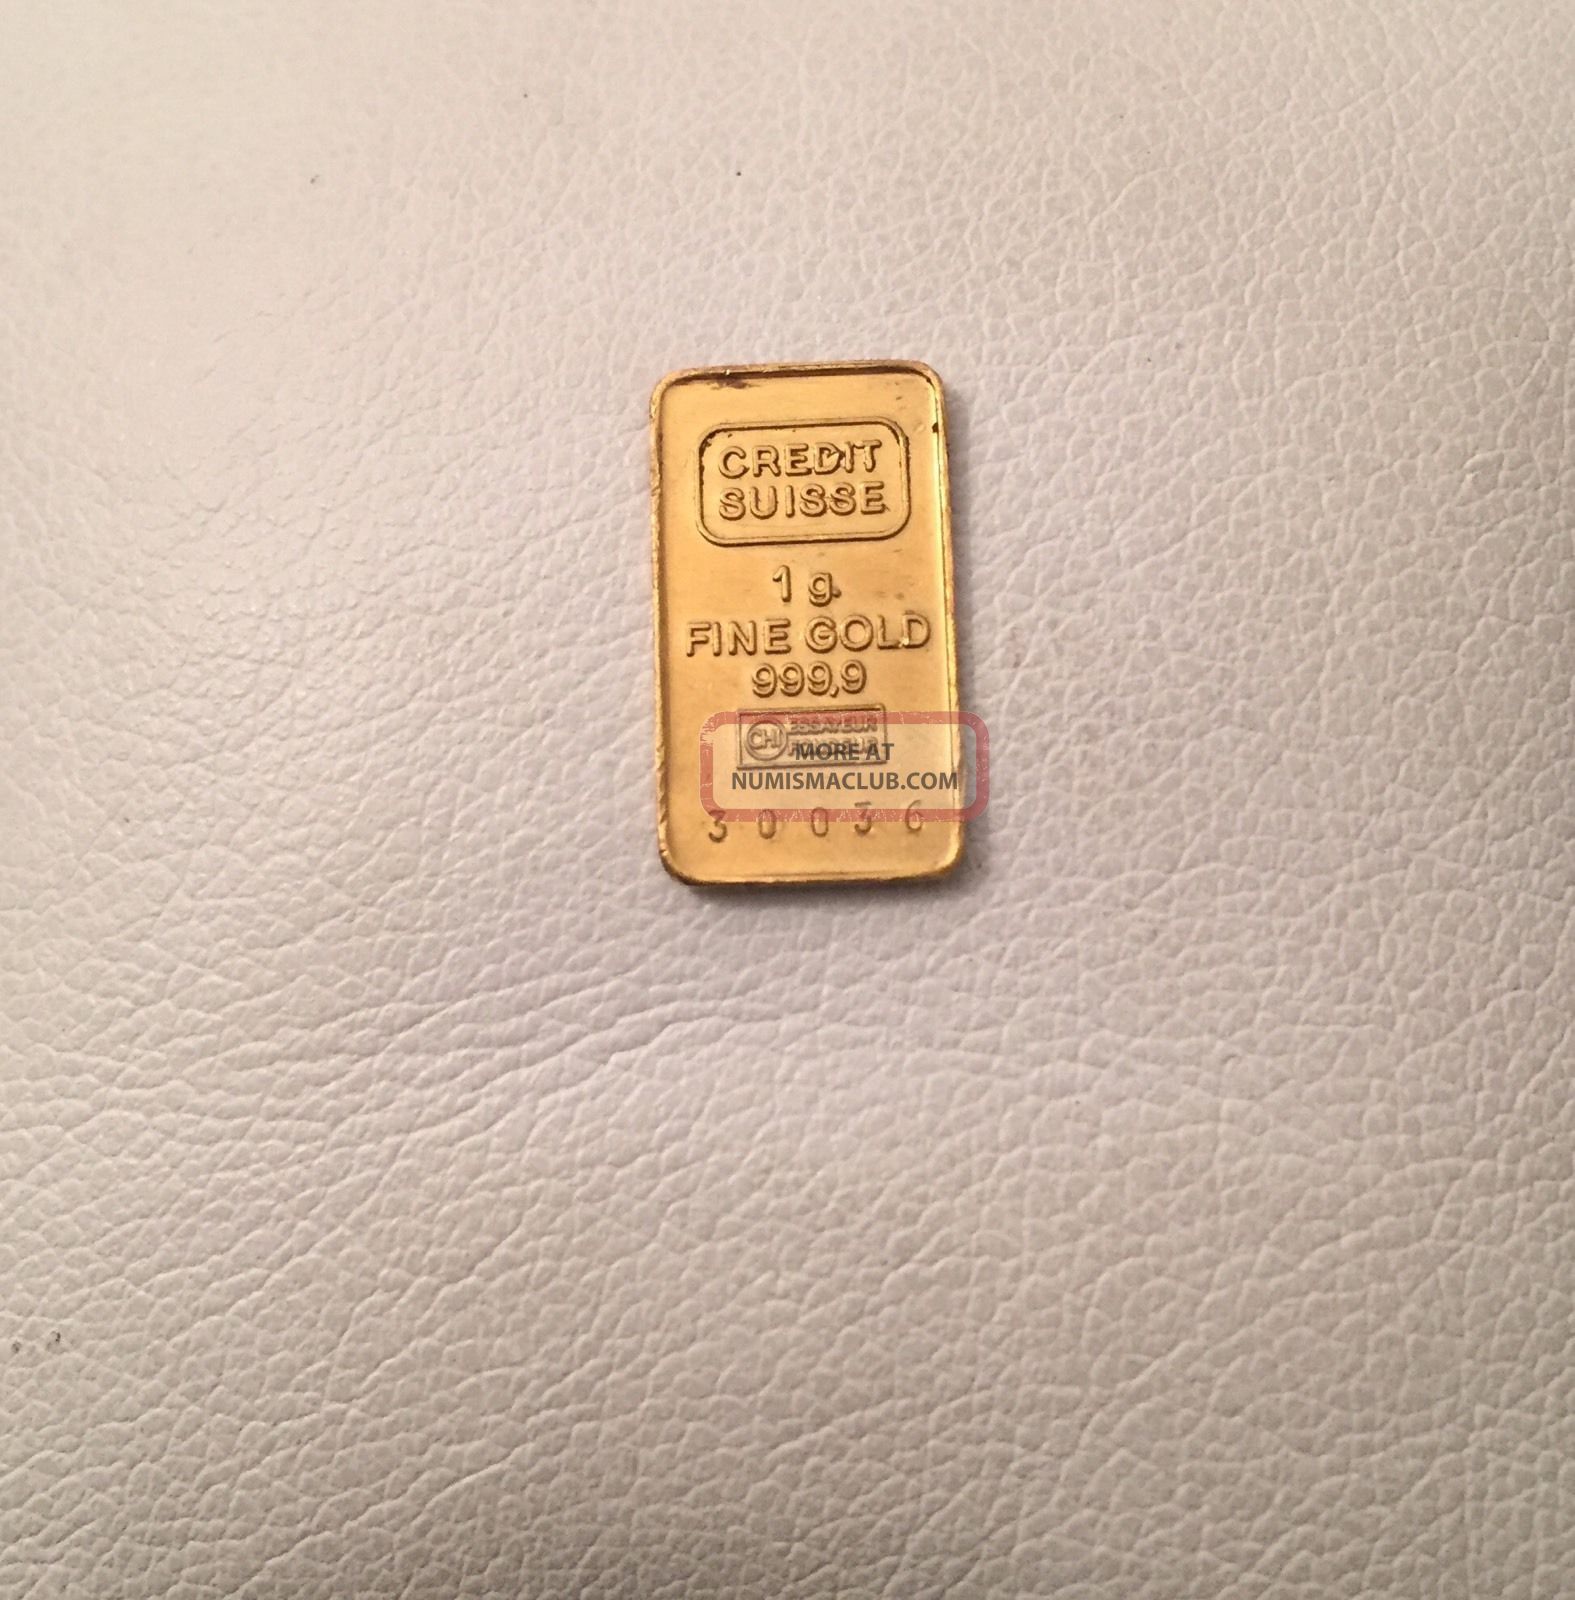 Credit Suisse 1g Fine Gold Bar, 999. 9